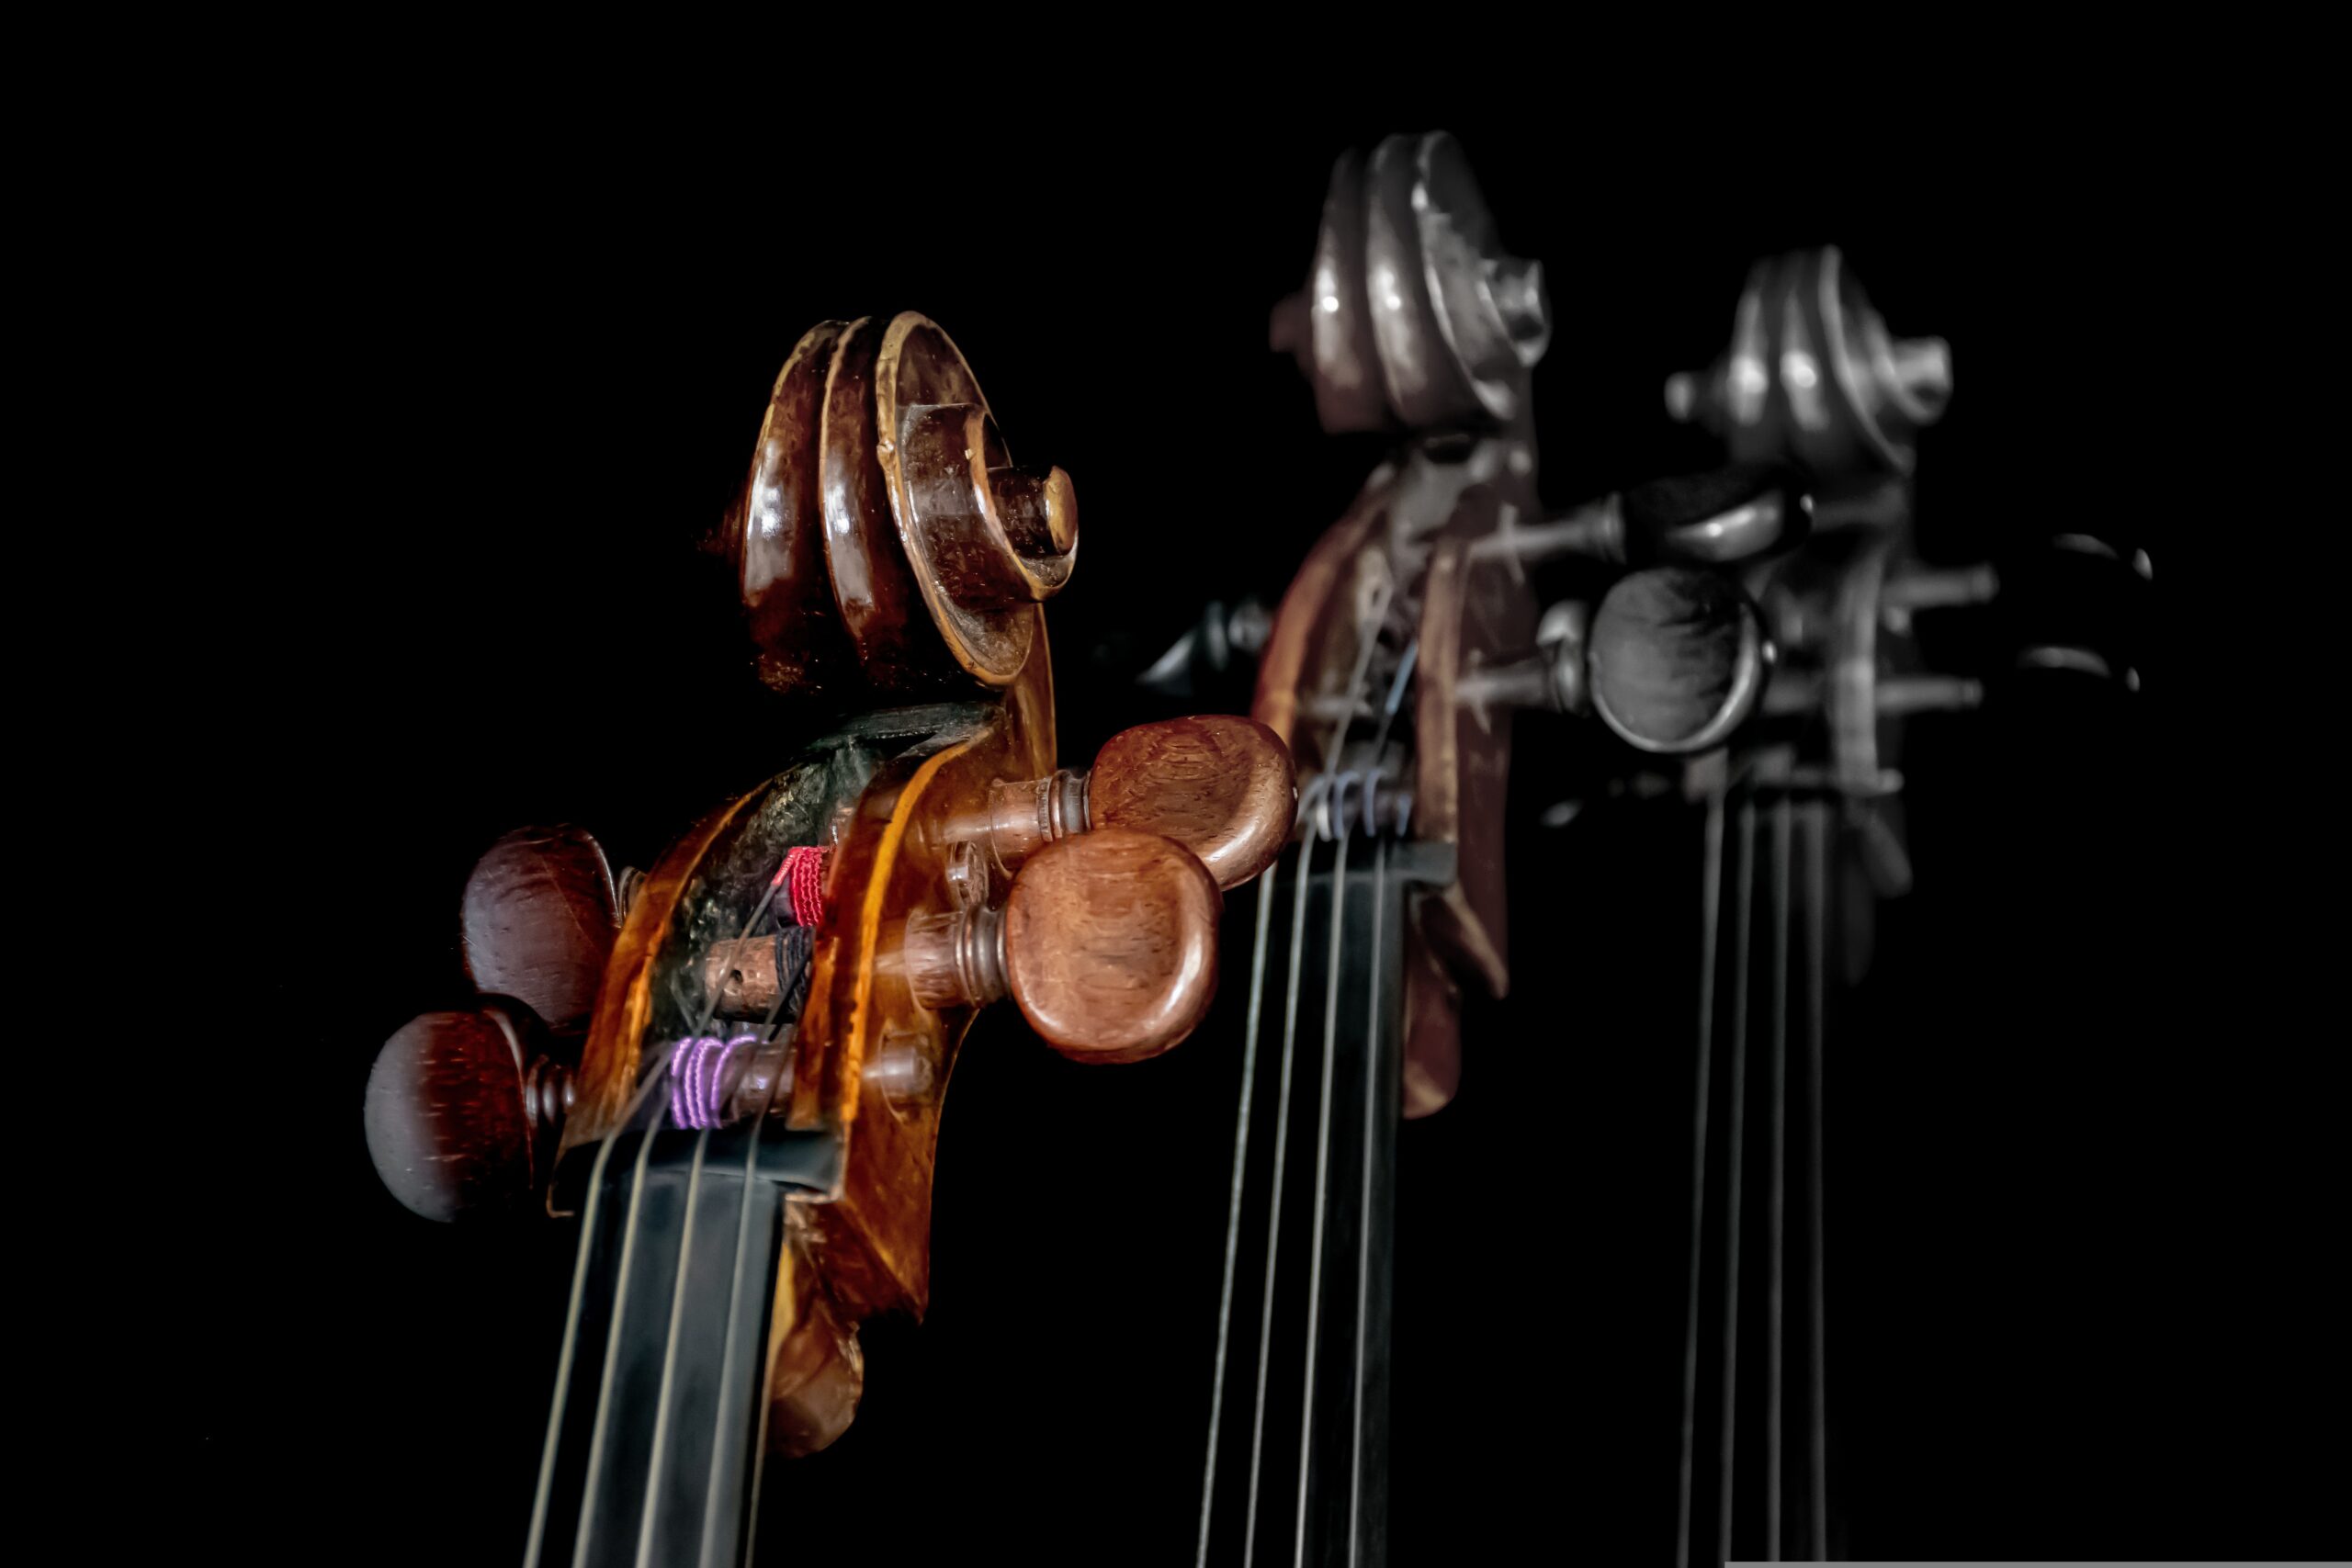 Tre exemplar av bild på celloöverdel med snäcka, stämskruvar etc. Svart bakgrund. De två kopiorna blir gradvis suddigare och mer färglösa.